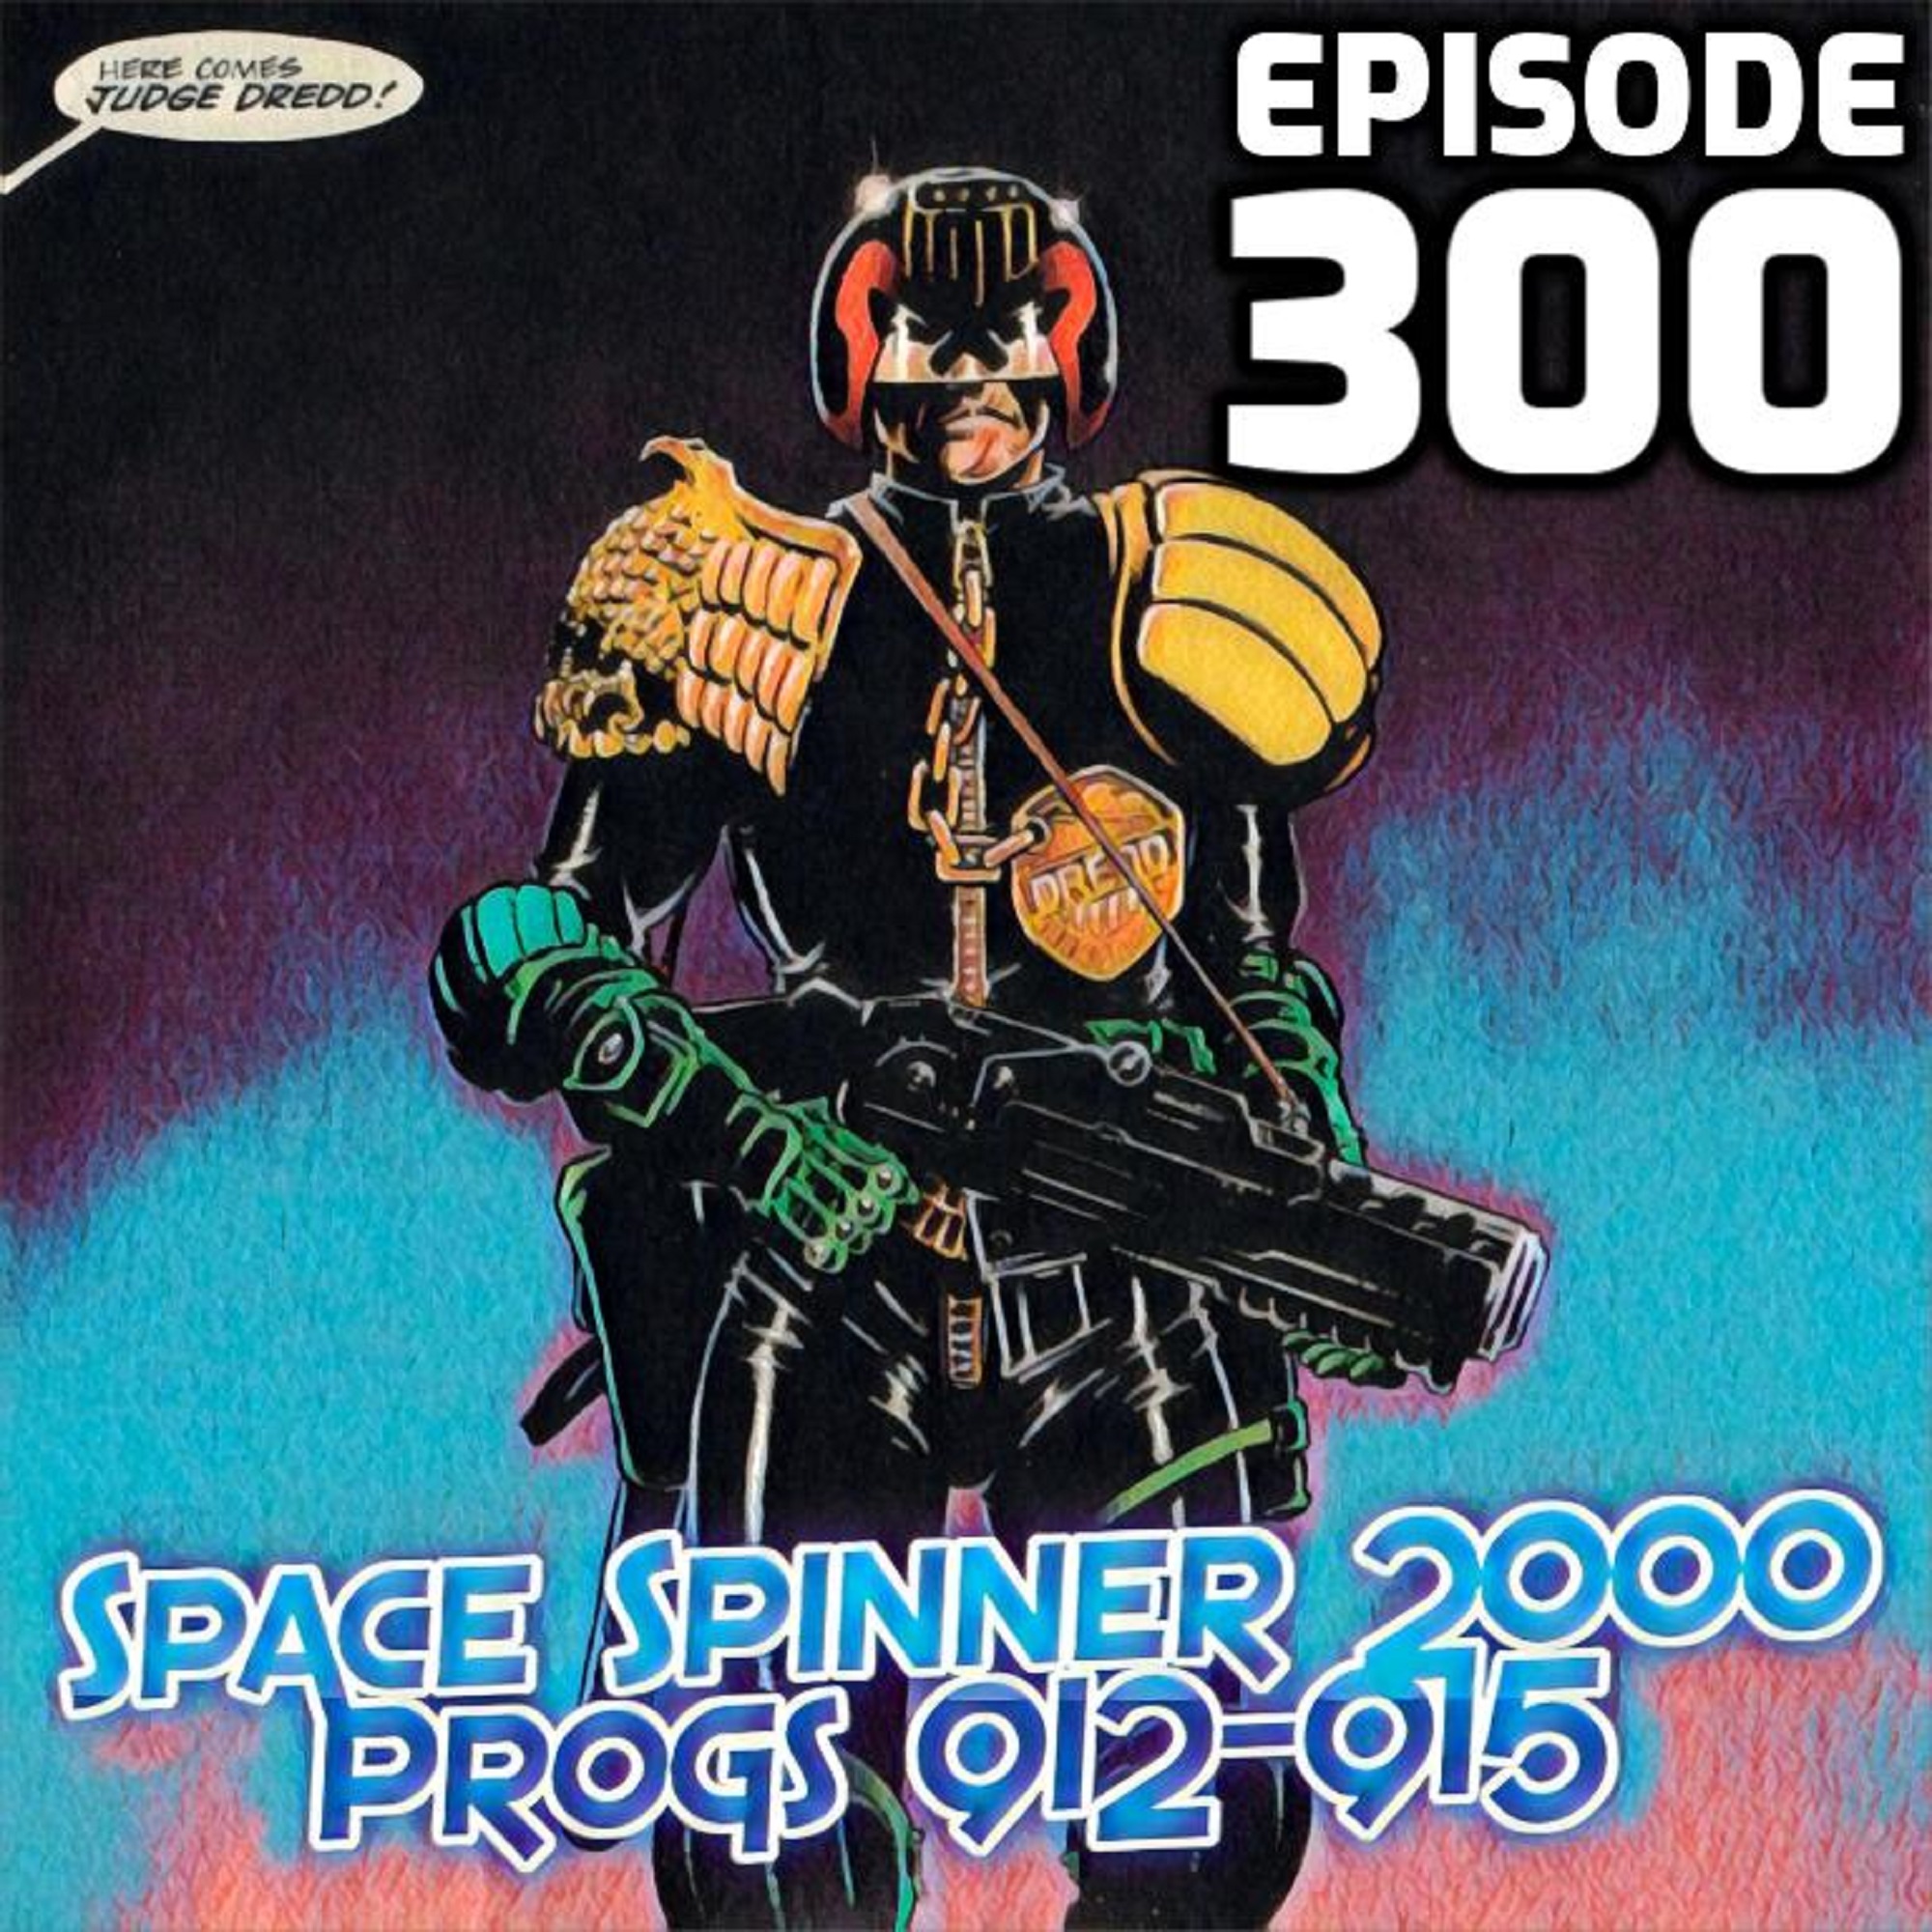 ep 300 – Progs 912-915